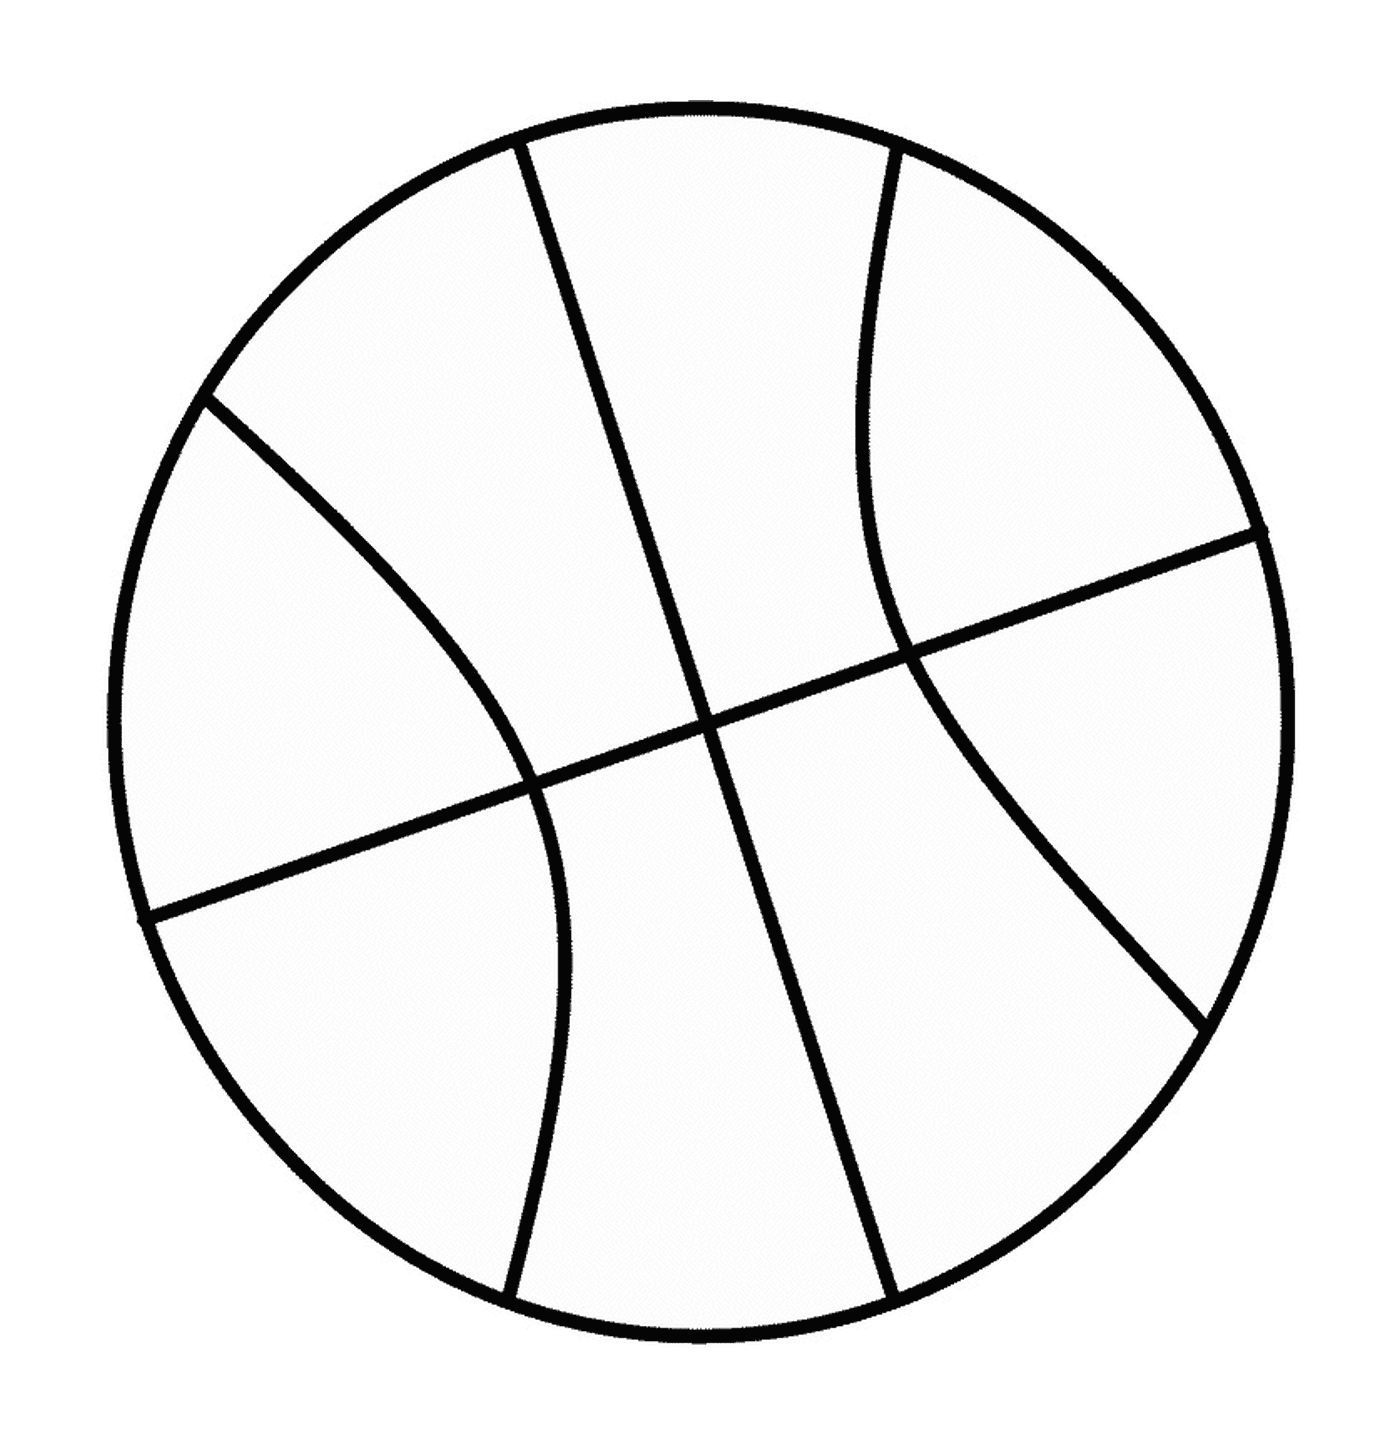  篮球图像 